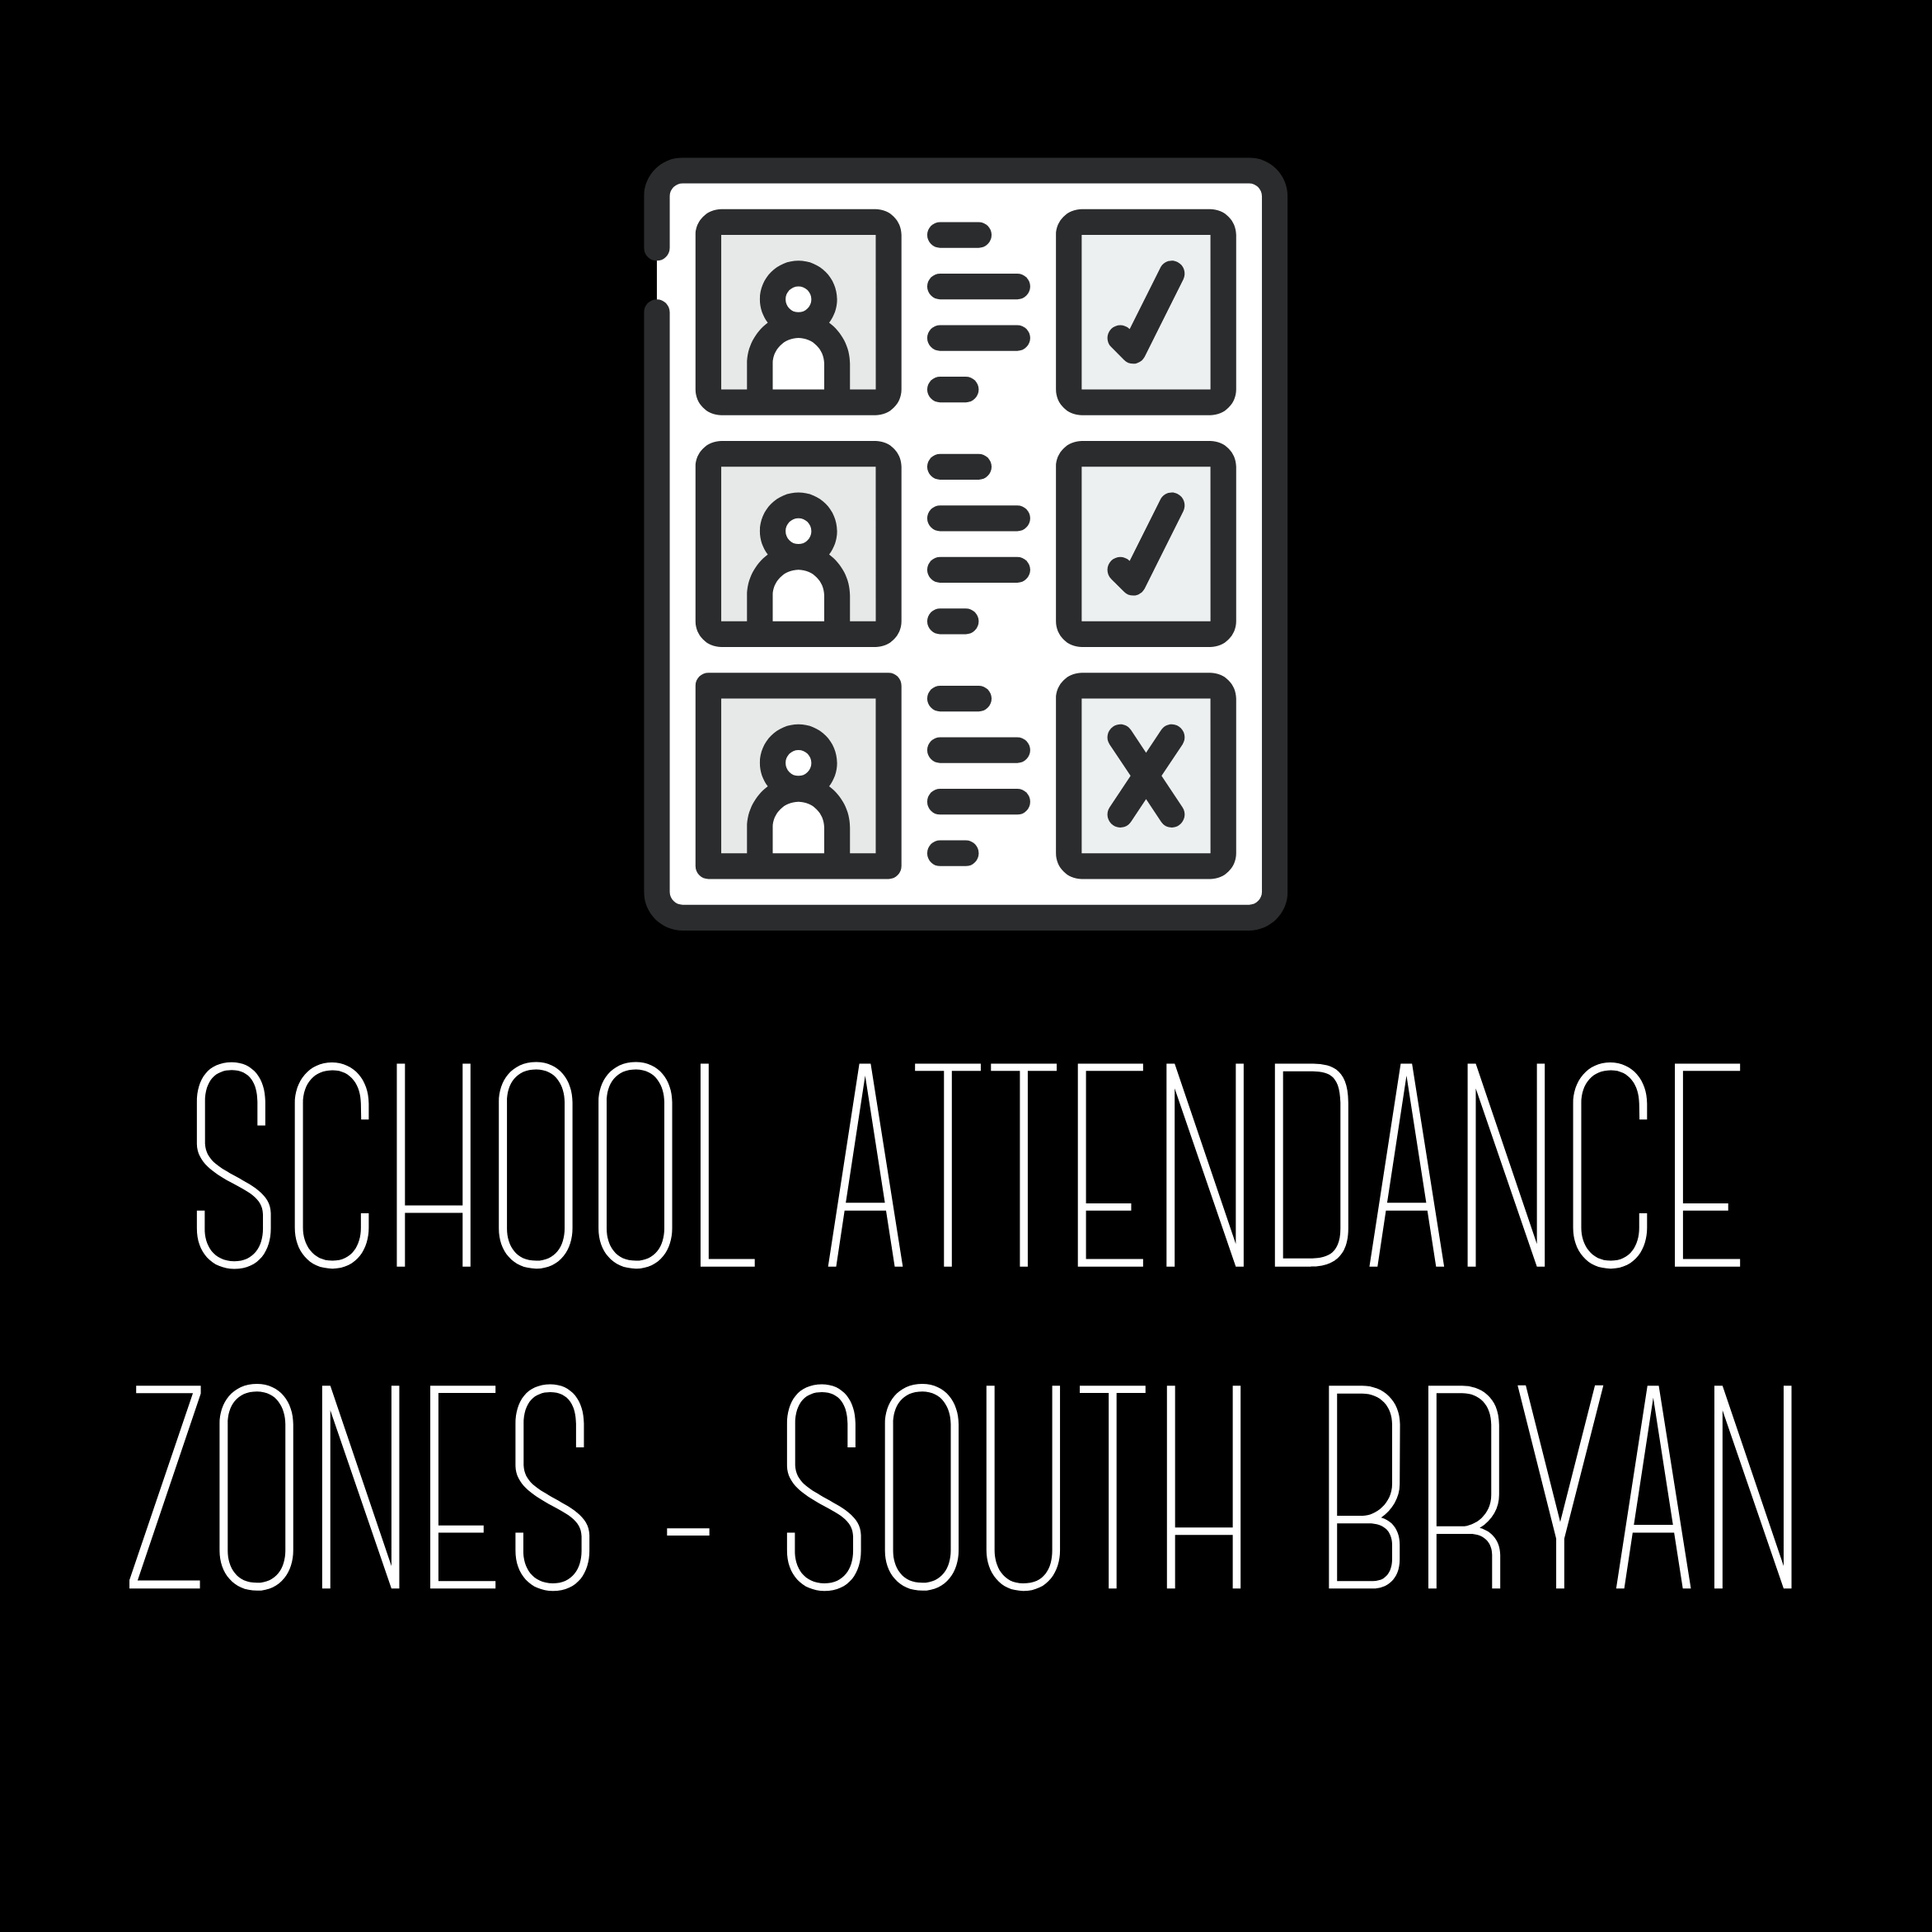 School Attendance Zones